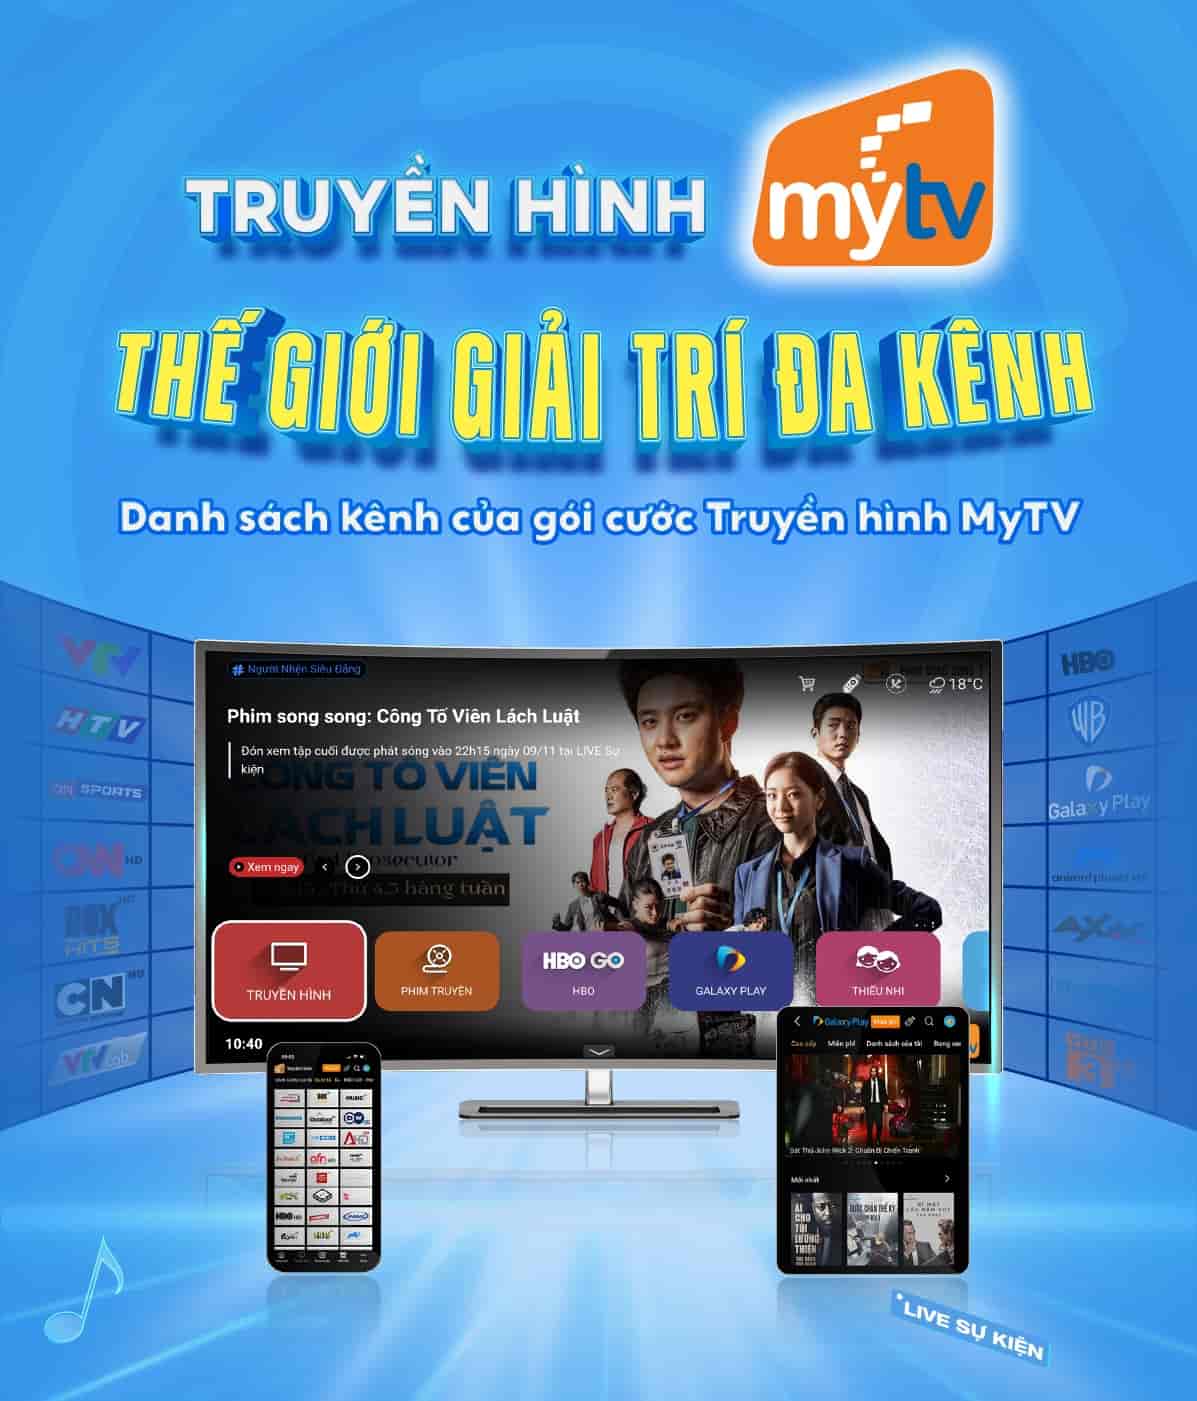 Danh Sach Kenh Truyen Hinh Mytv, danh sách kênh truyền hình mytv, gói kênh truyền hình mytv, gói kênh mytv, danh sách kênh mytv